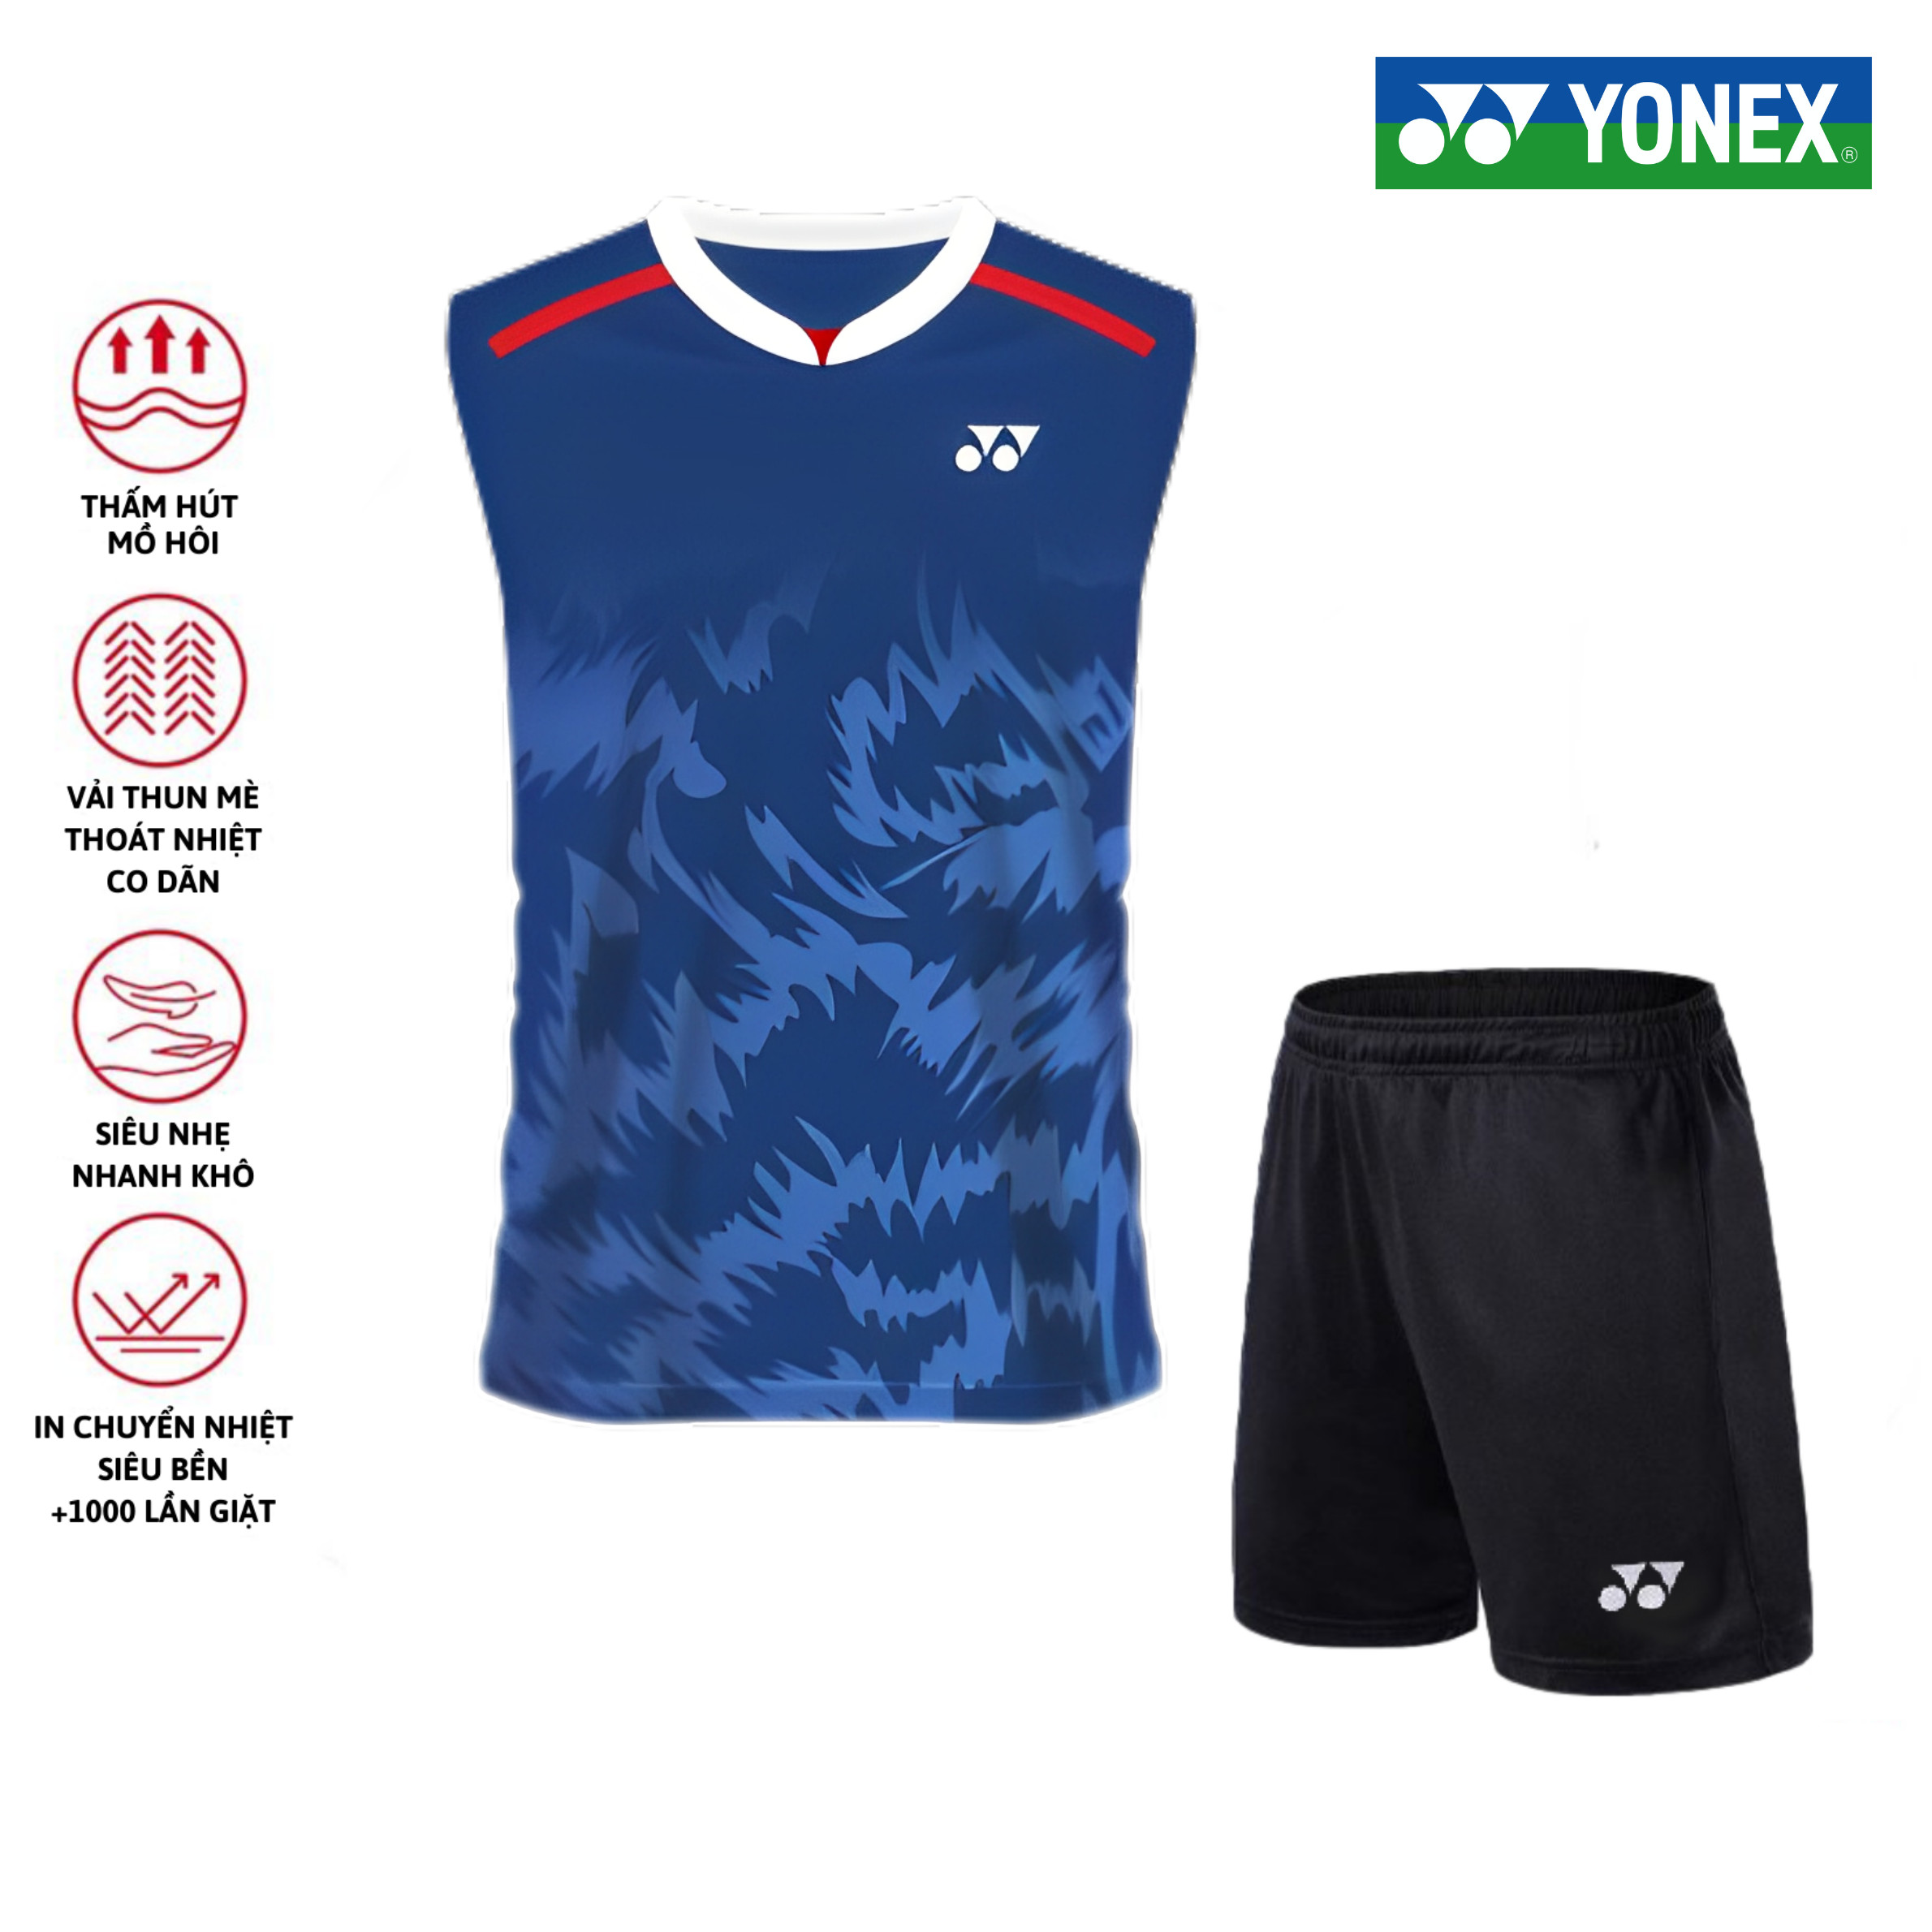 Áo cầu lông, quần cầu lông Yonex chuyên nghiệp mới nhất sử dụng tập luyện và thi đấu cầu lông A271